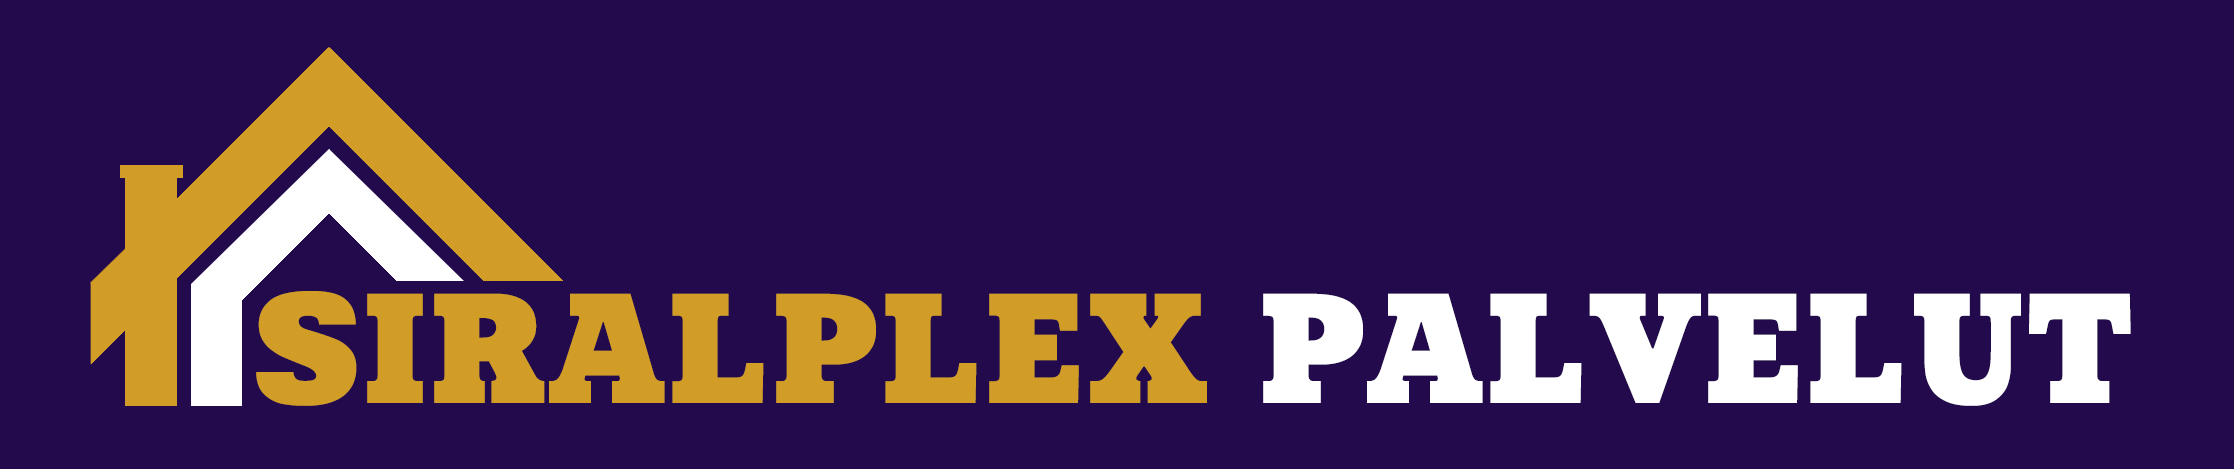 siralplex palvelut logo